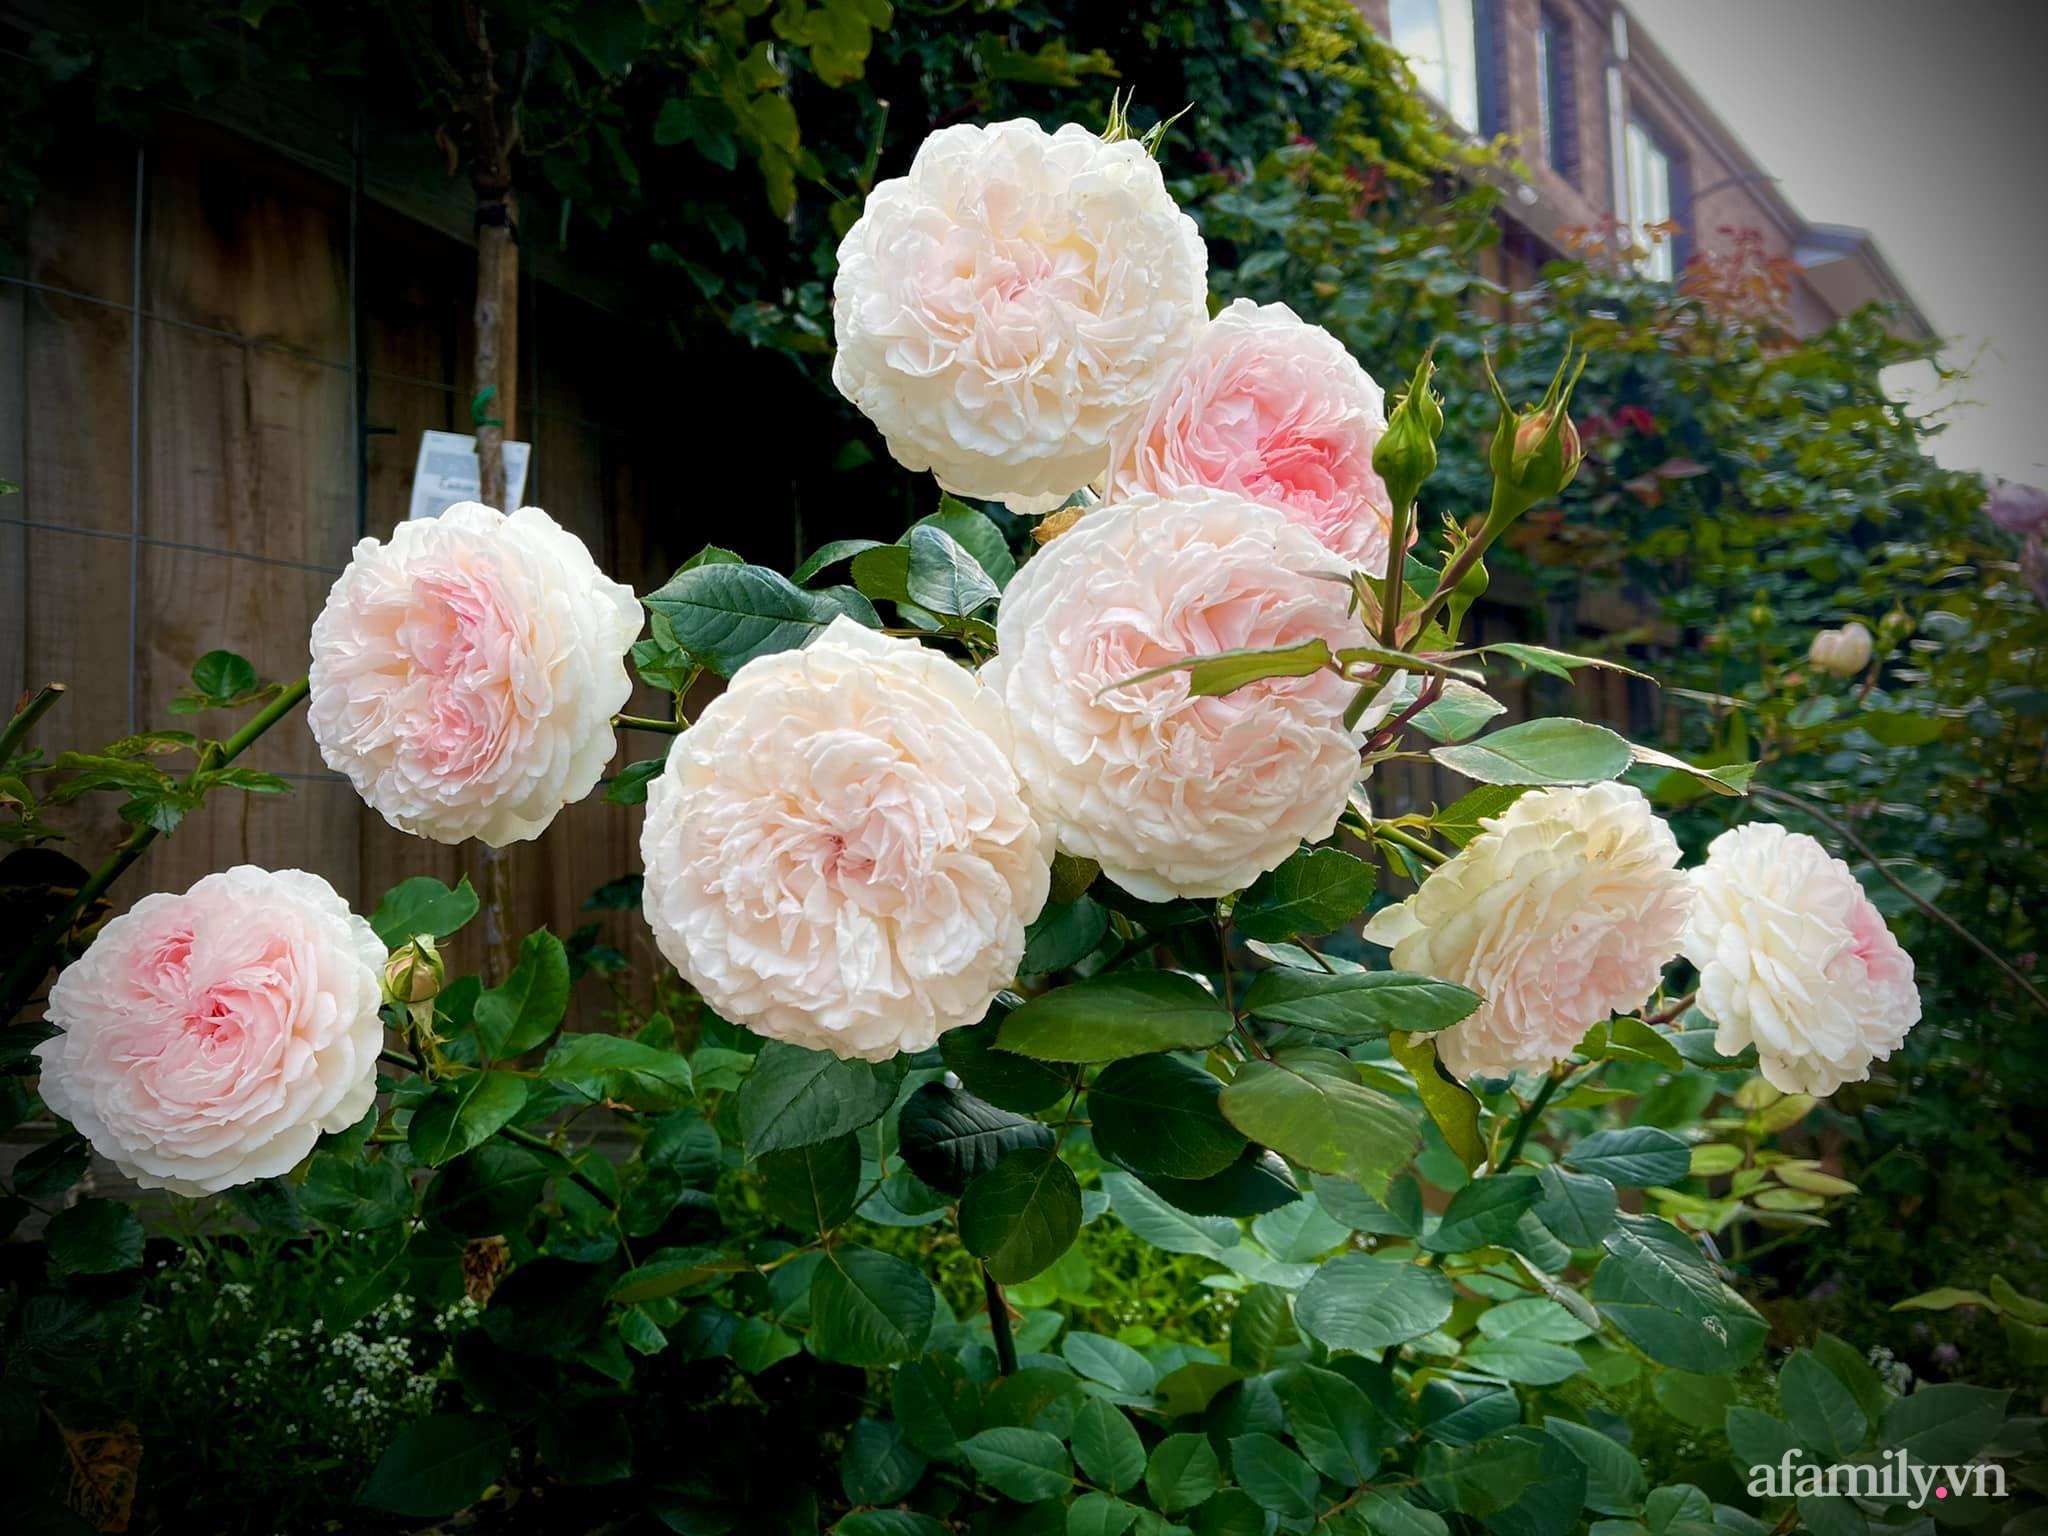 Vườn hồng 250m² ngát hương rực rỡ sắc màu đẹp như cổ tích của mẹ Việt ở Úc - Ảnh 25.